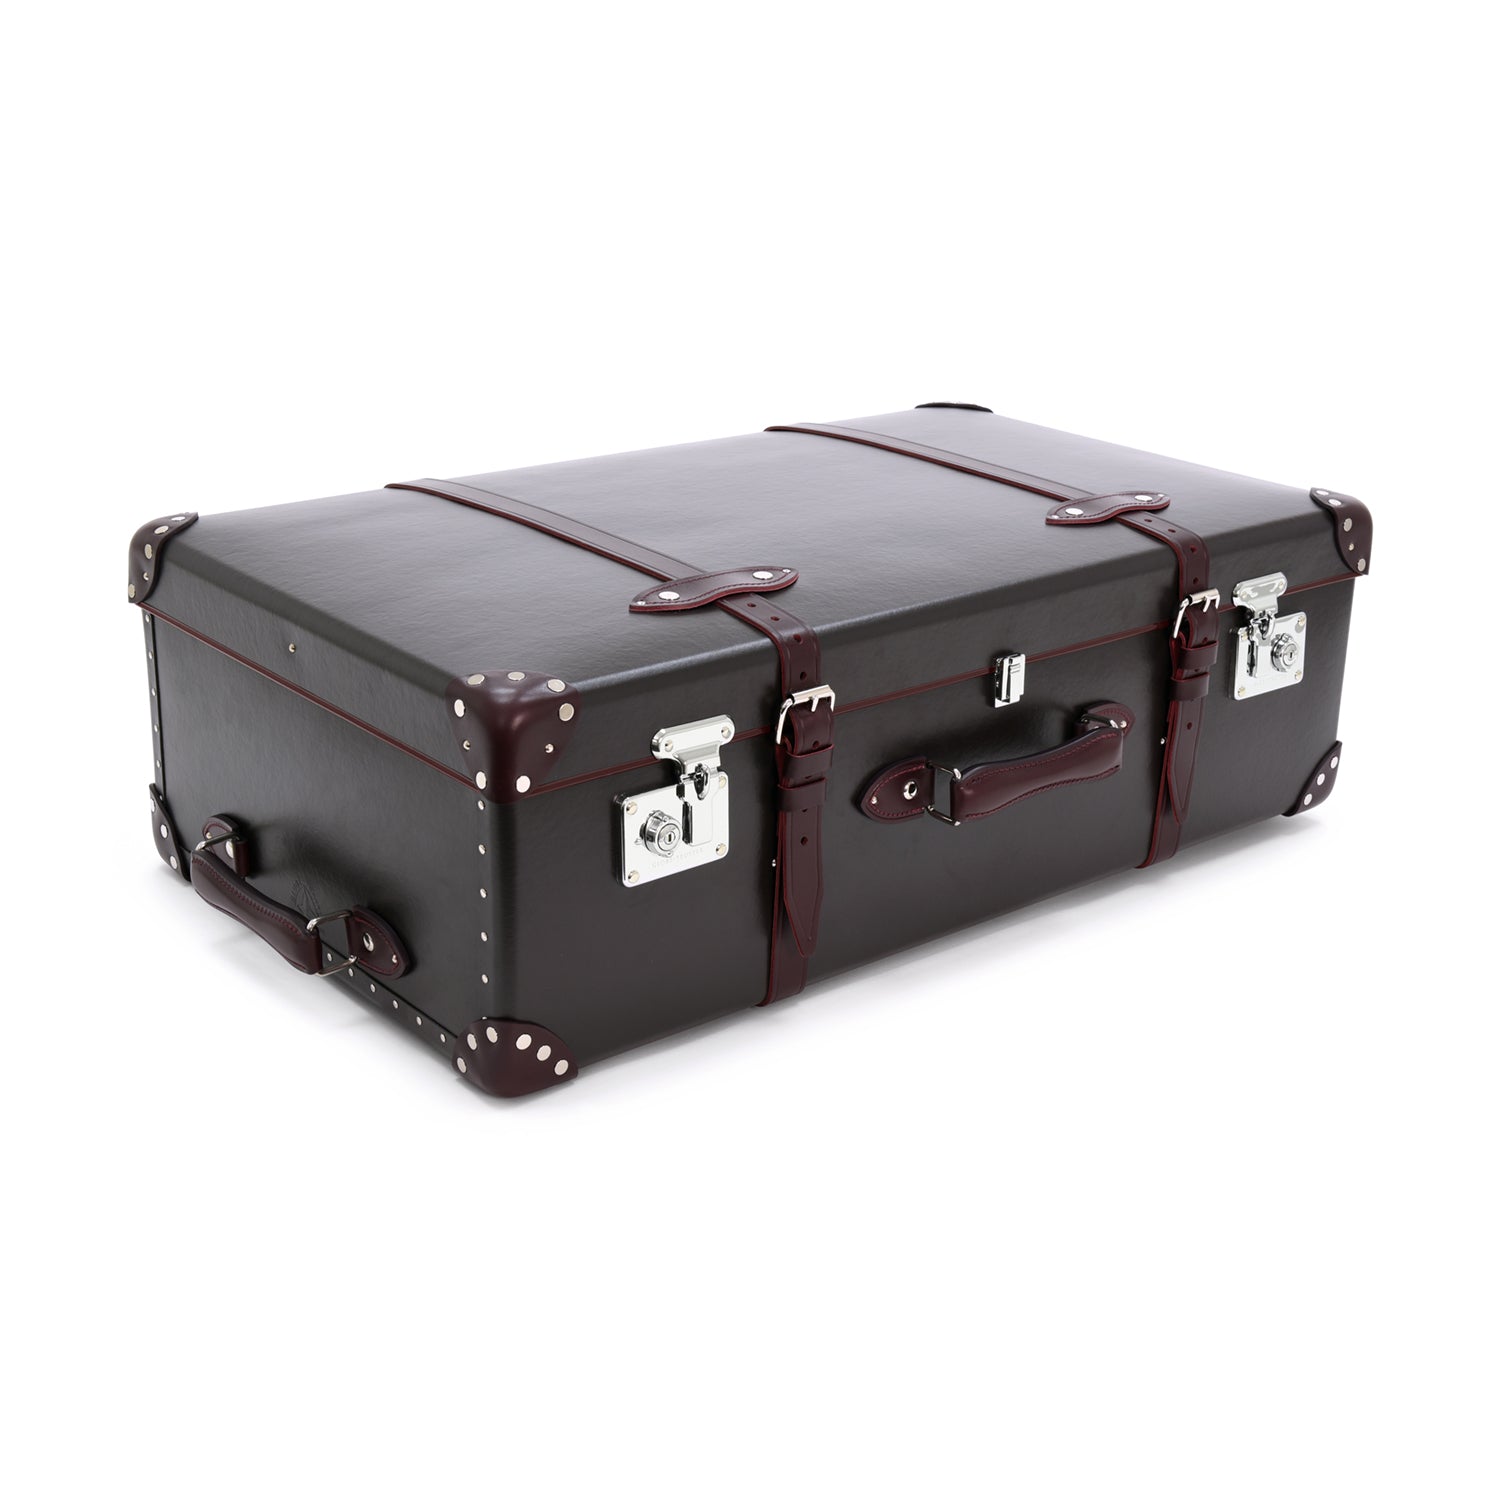 センテナリー · ラージスーツケース | ブラウン/バーガンディ